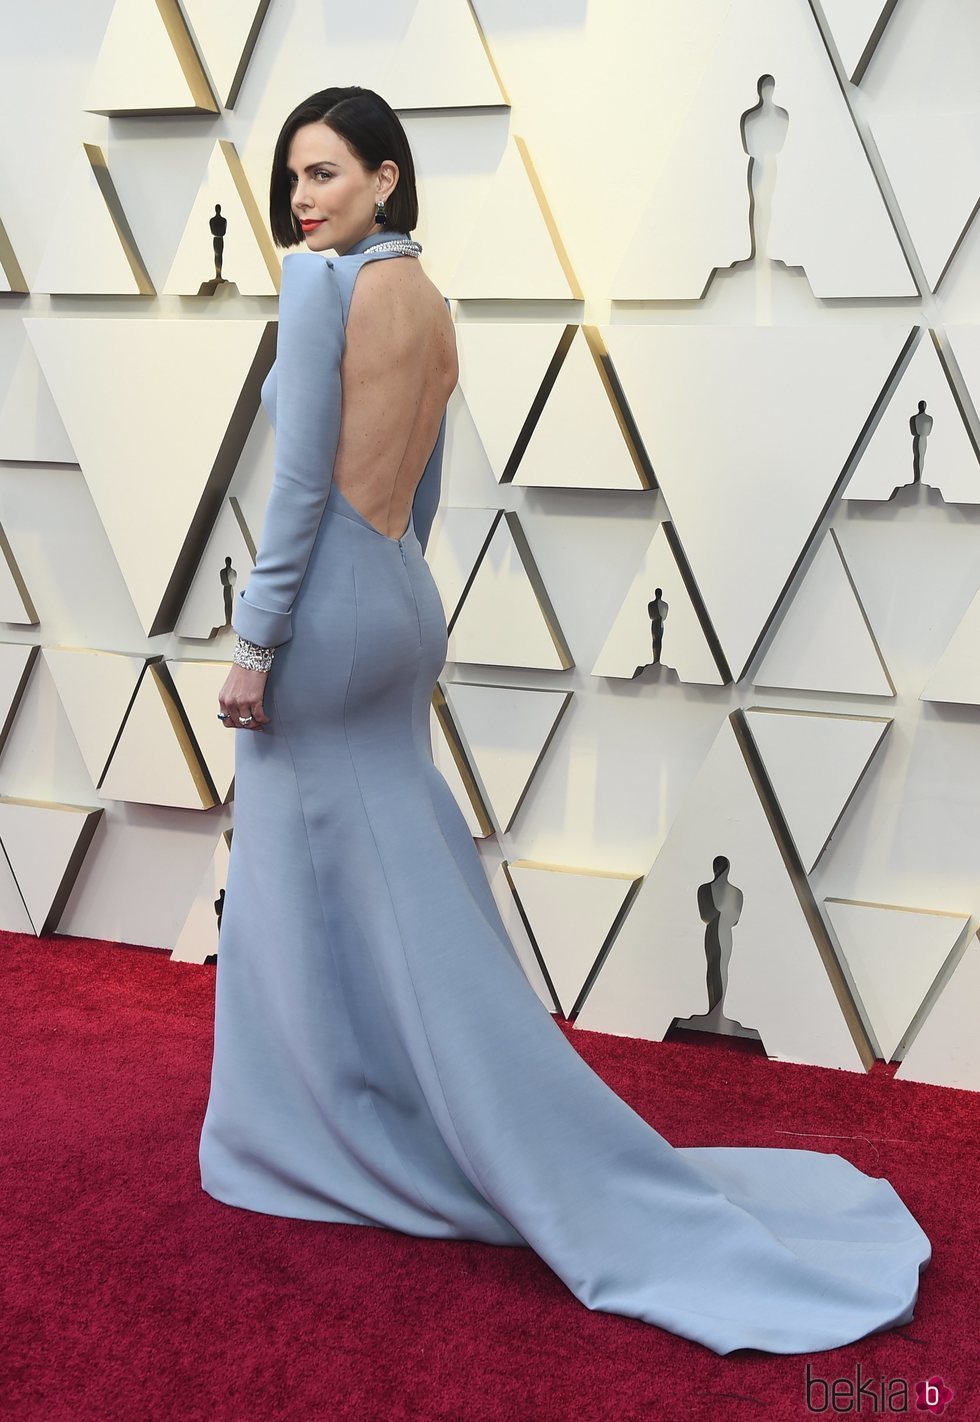 Charlize Theron enseñando su vestido en la alfombra roja de los Premios Oscar 2019